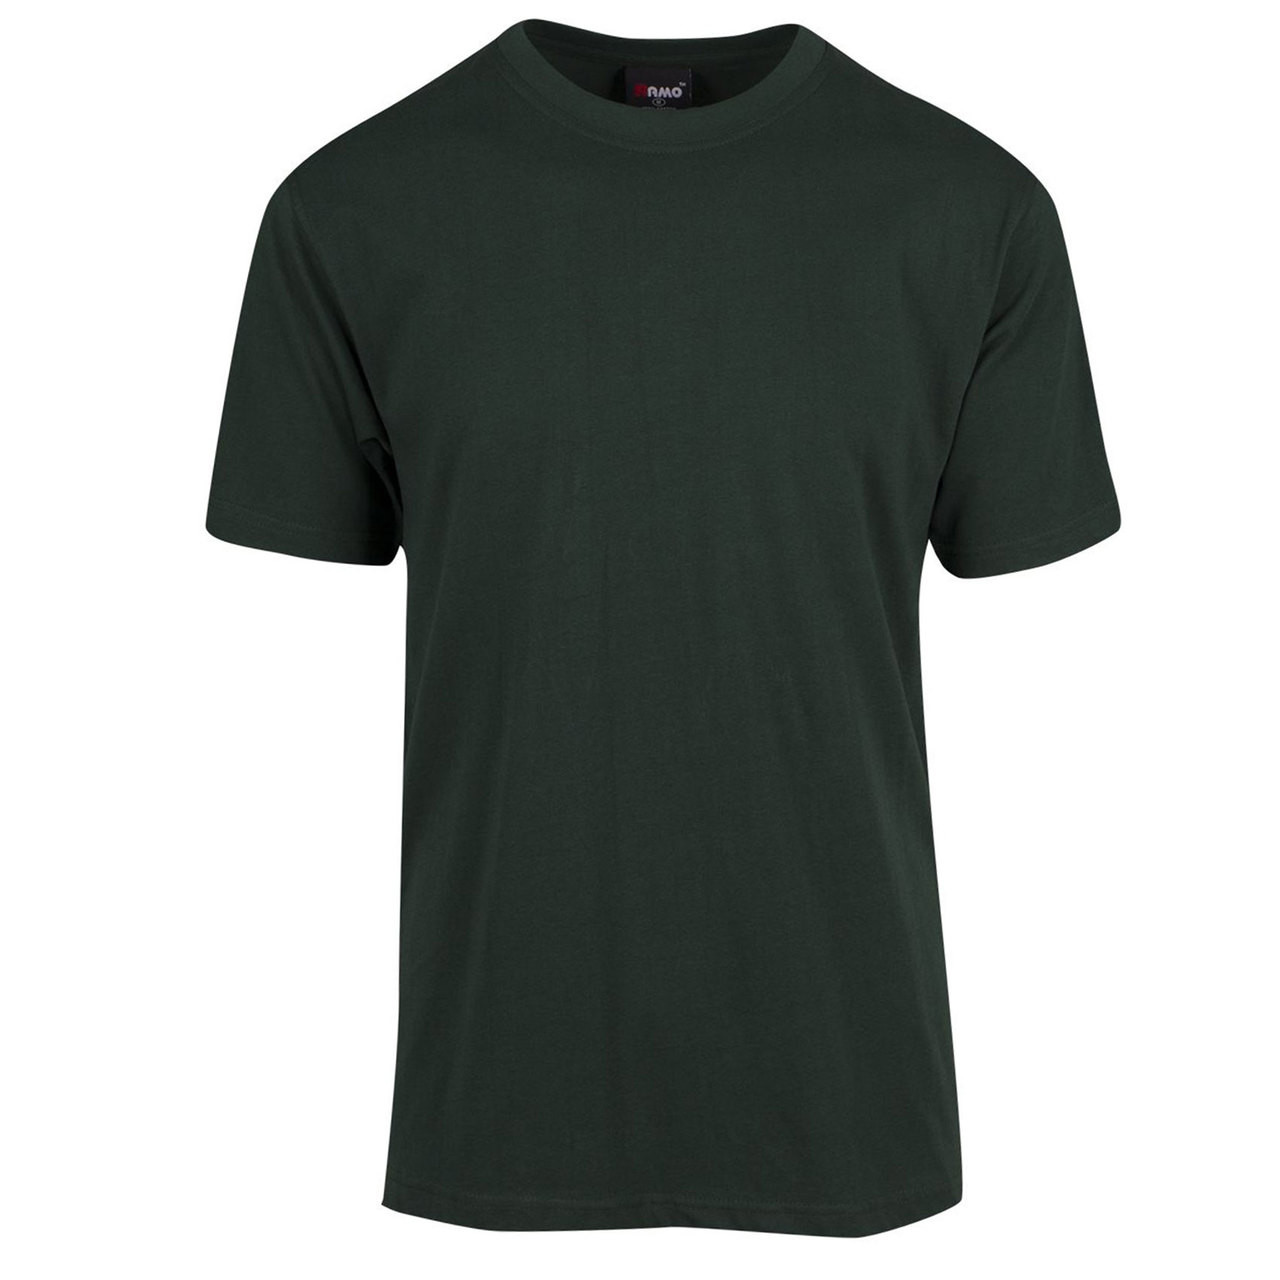 BUDGET | t-shirts Plain Promo Tee | Plain T Shirts | Wholesale T Shirts ...